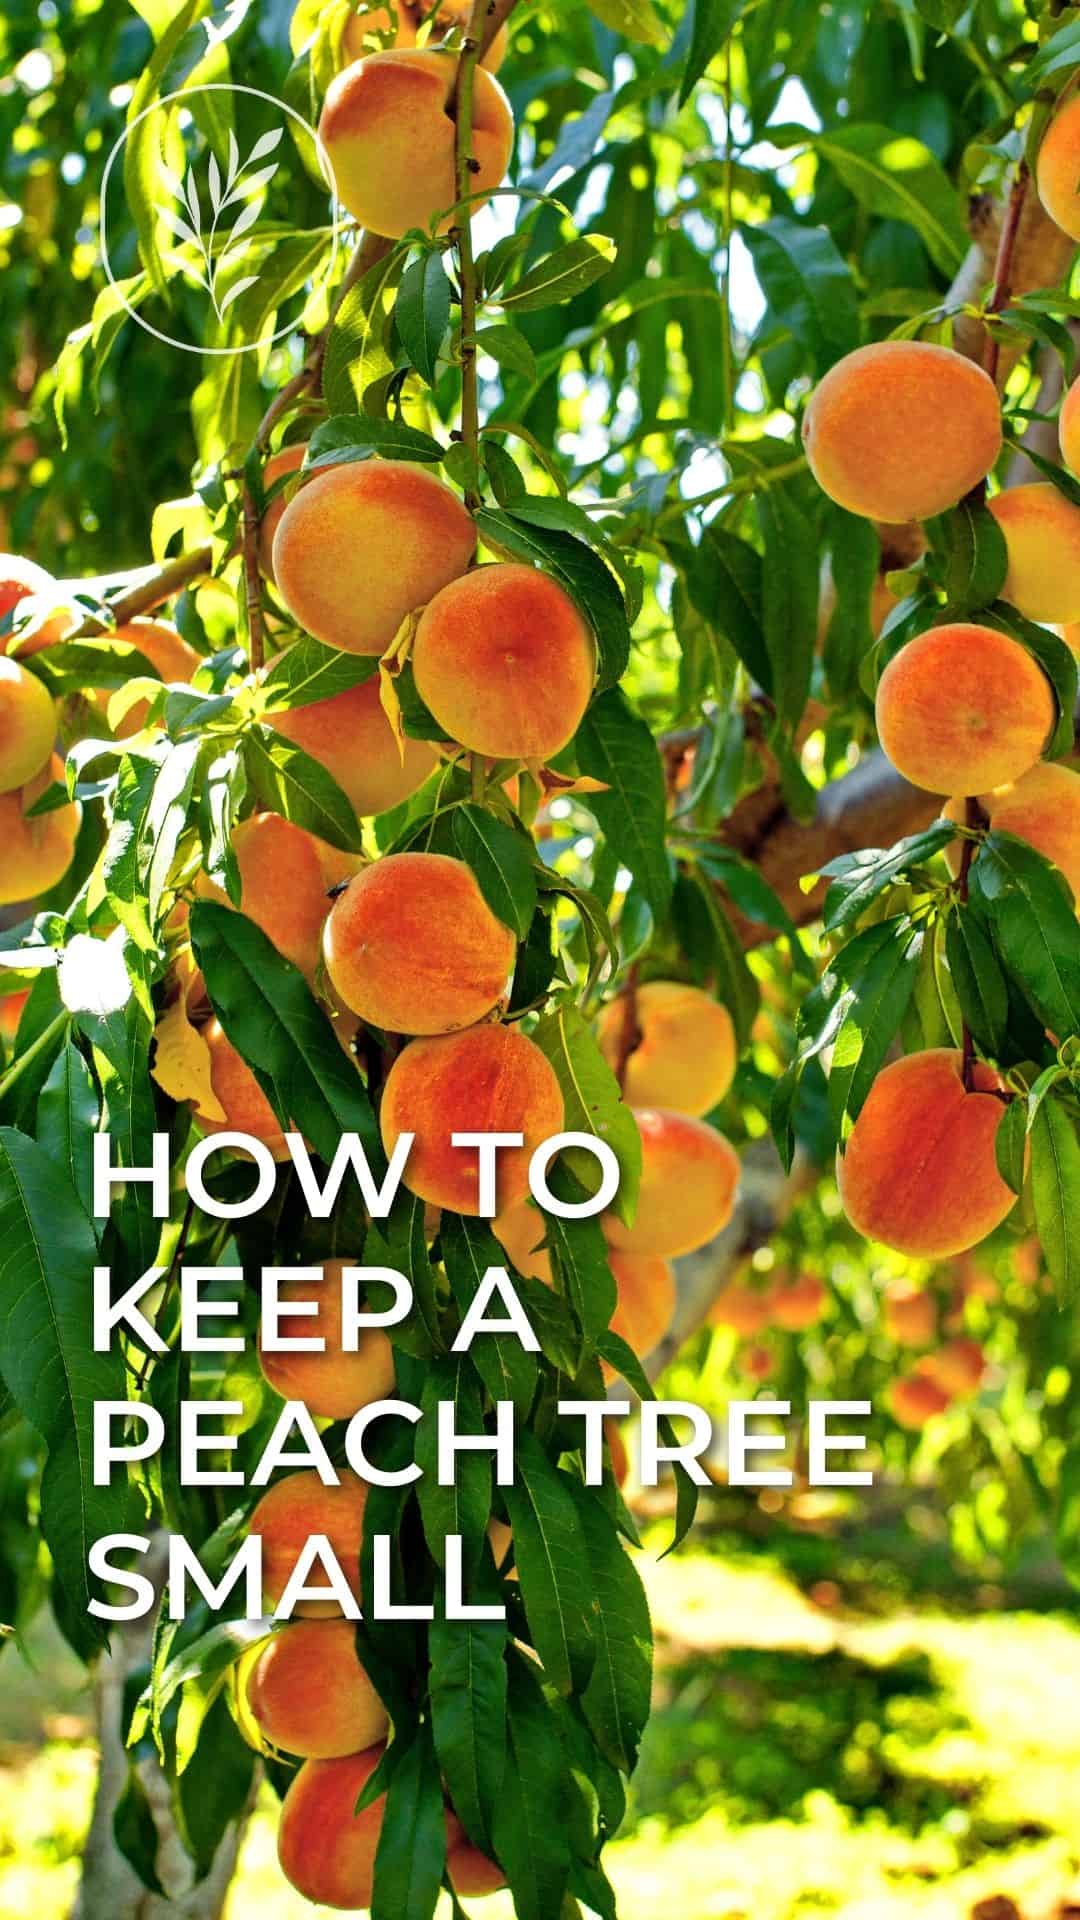 How to keep a peach tree small - story via @home4theharvest